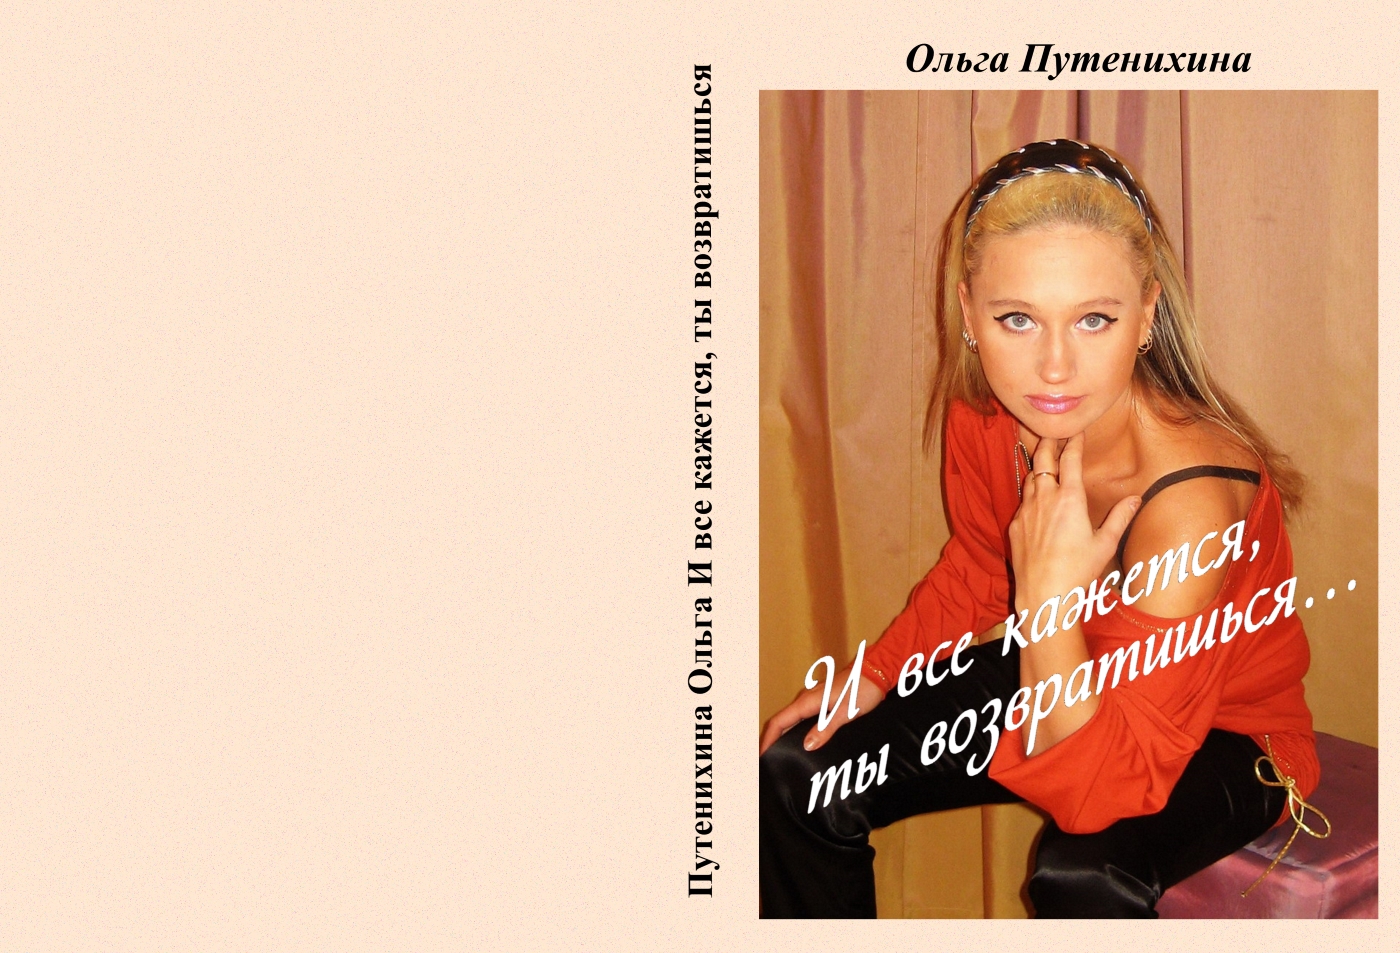 Обложка книги Путенихиной Ольги